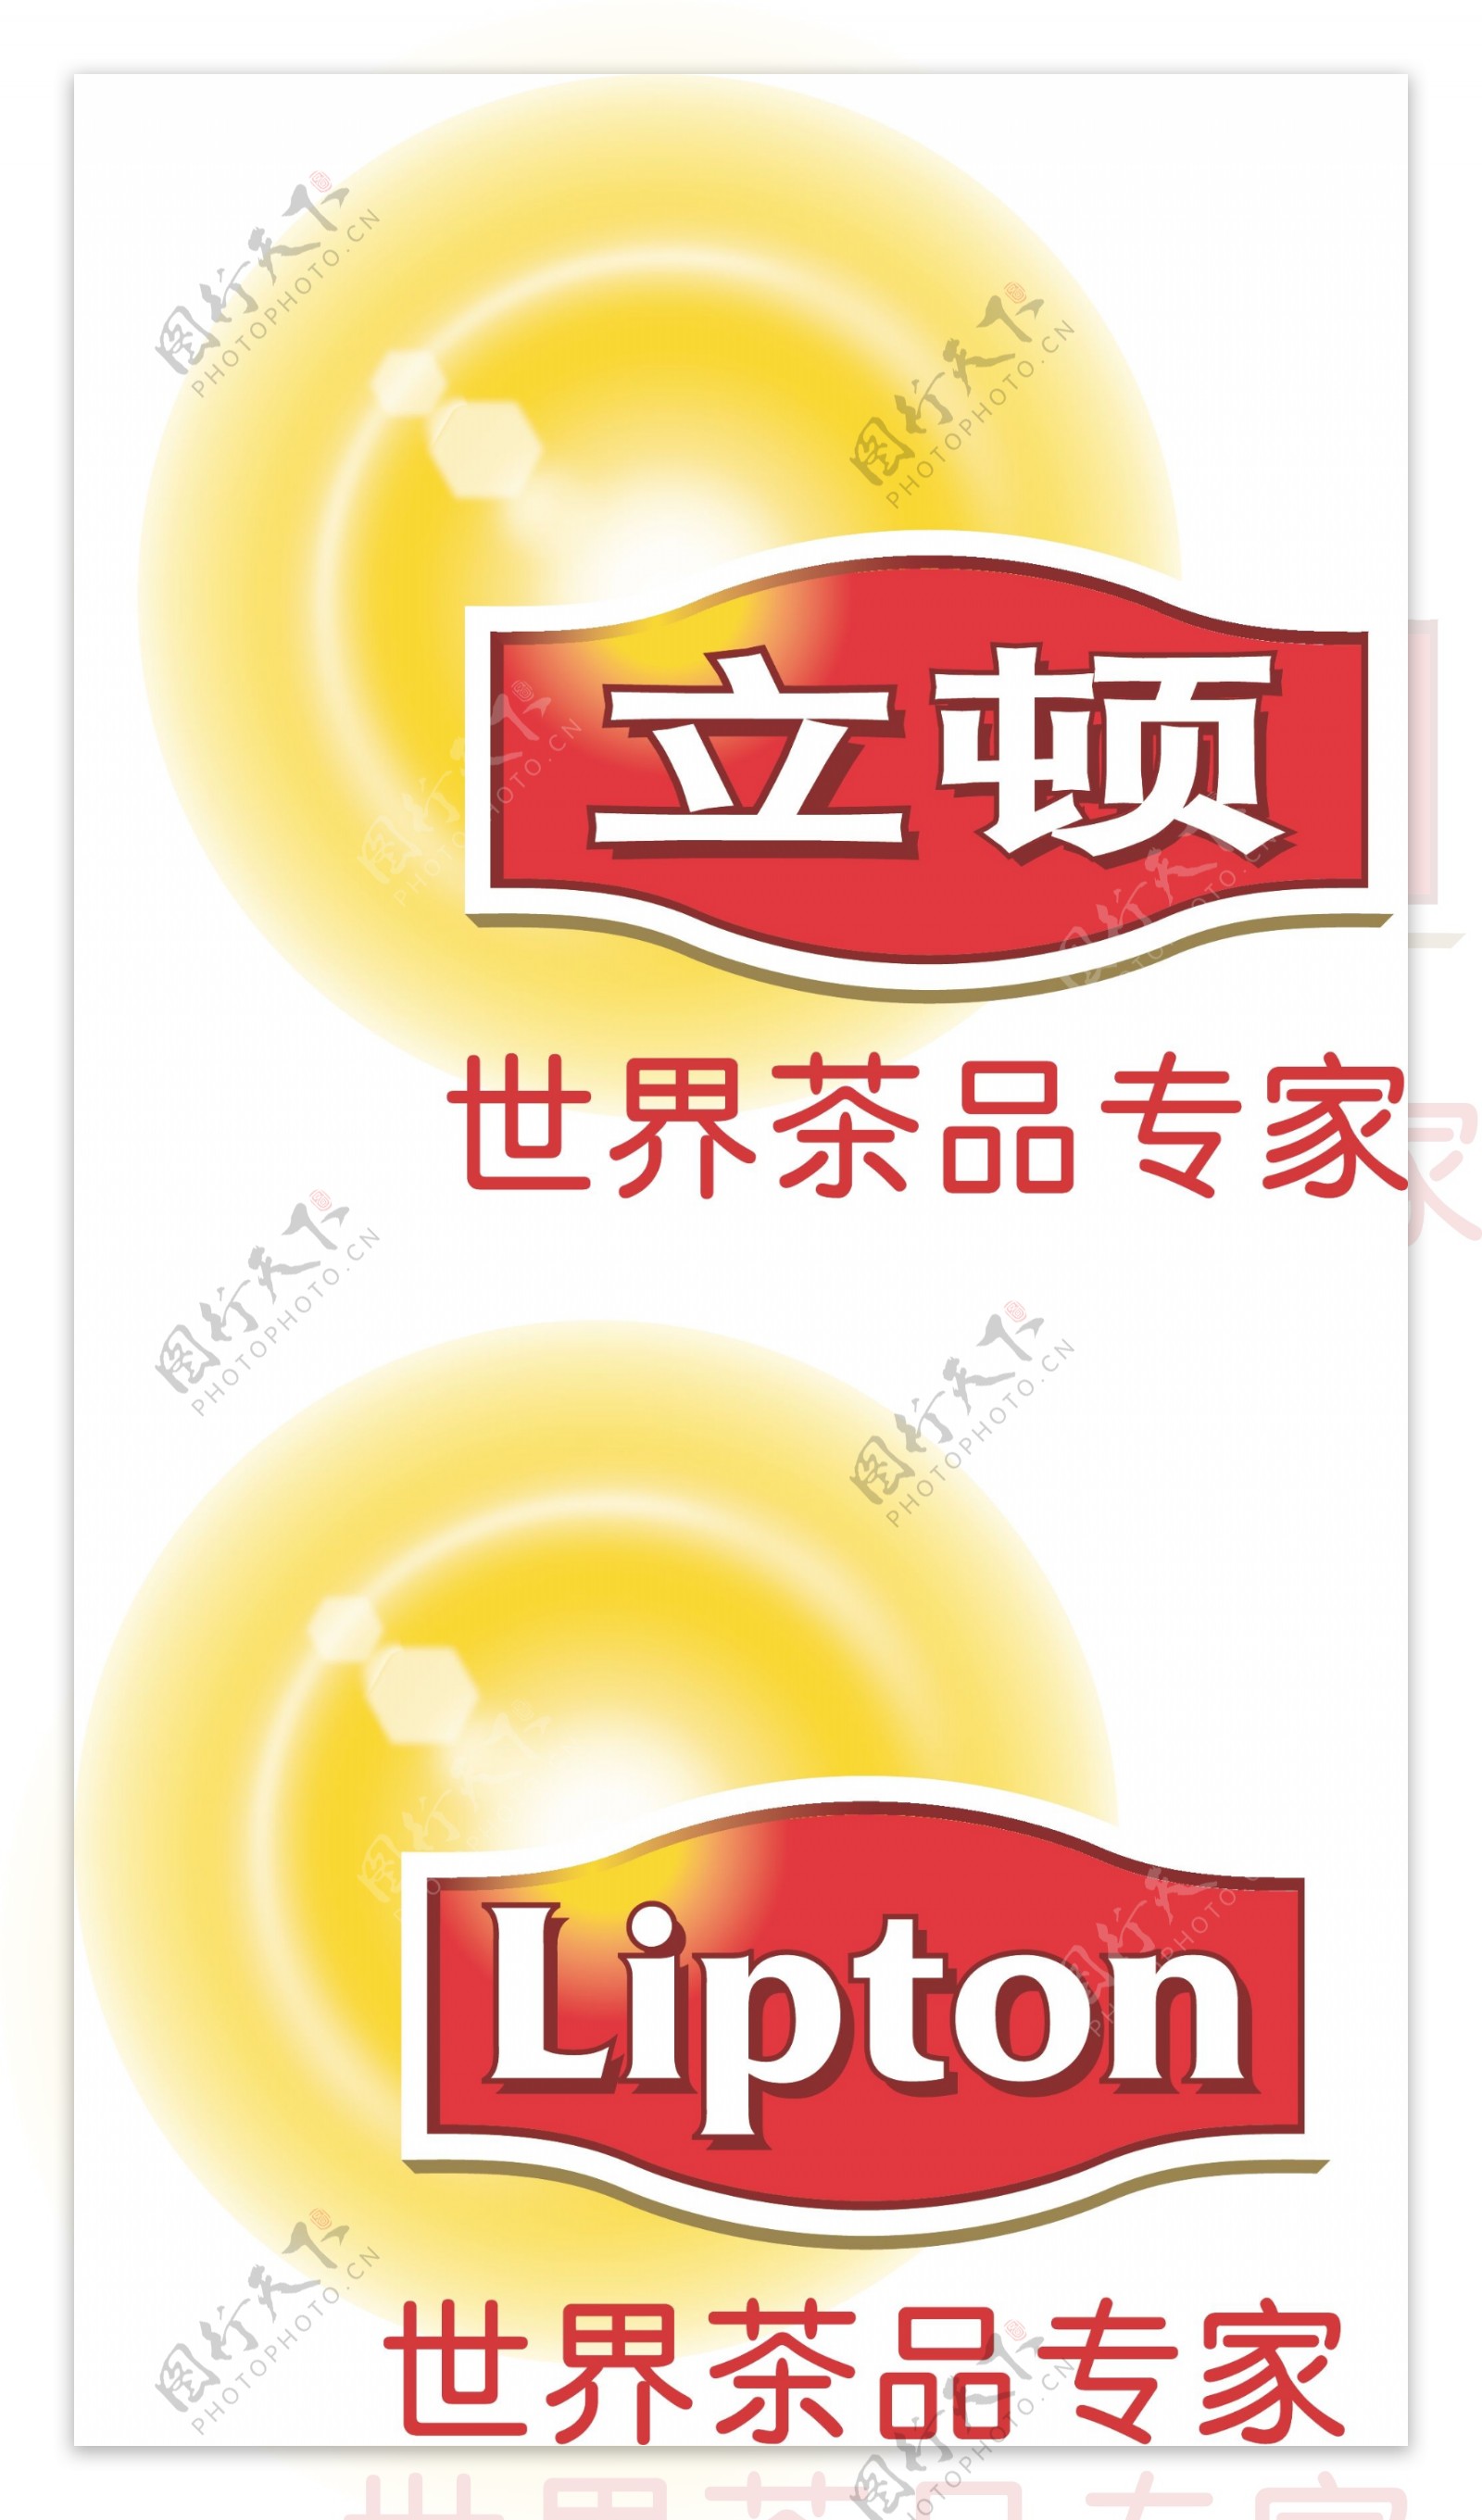 立顿奶茶logo图片